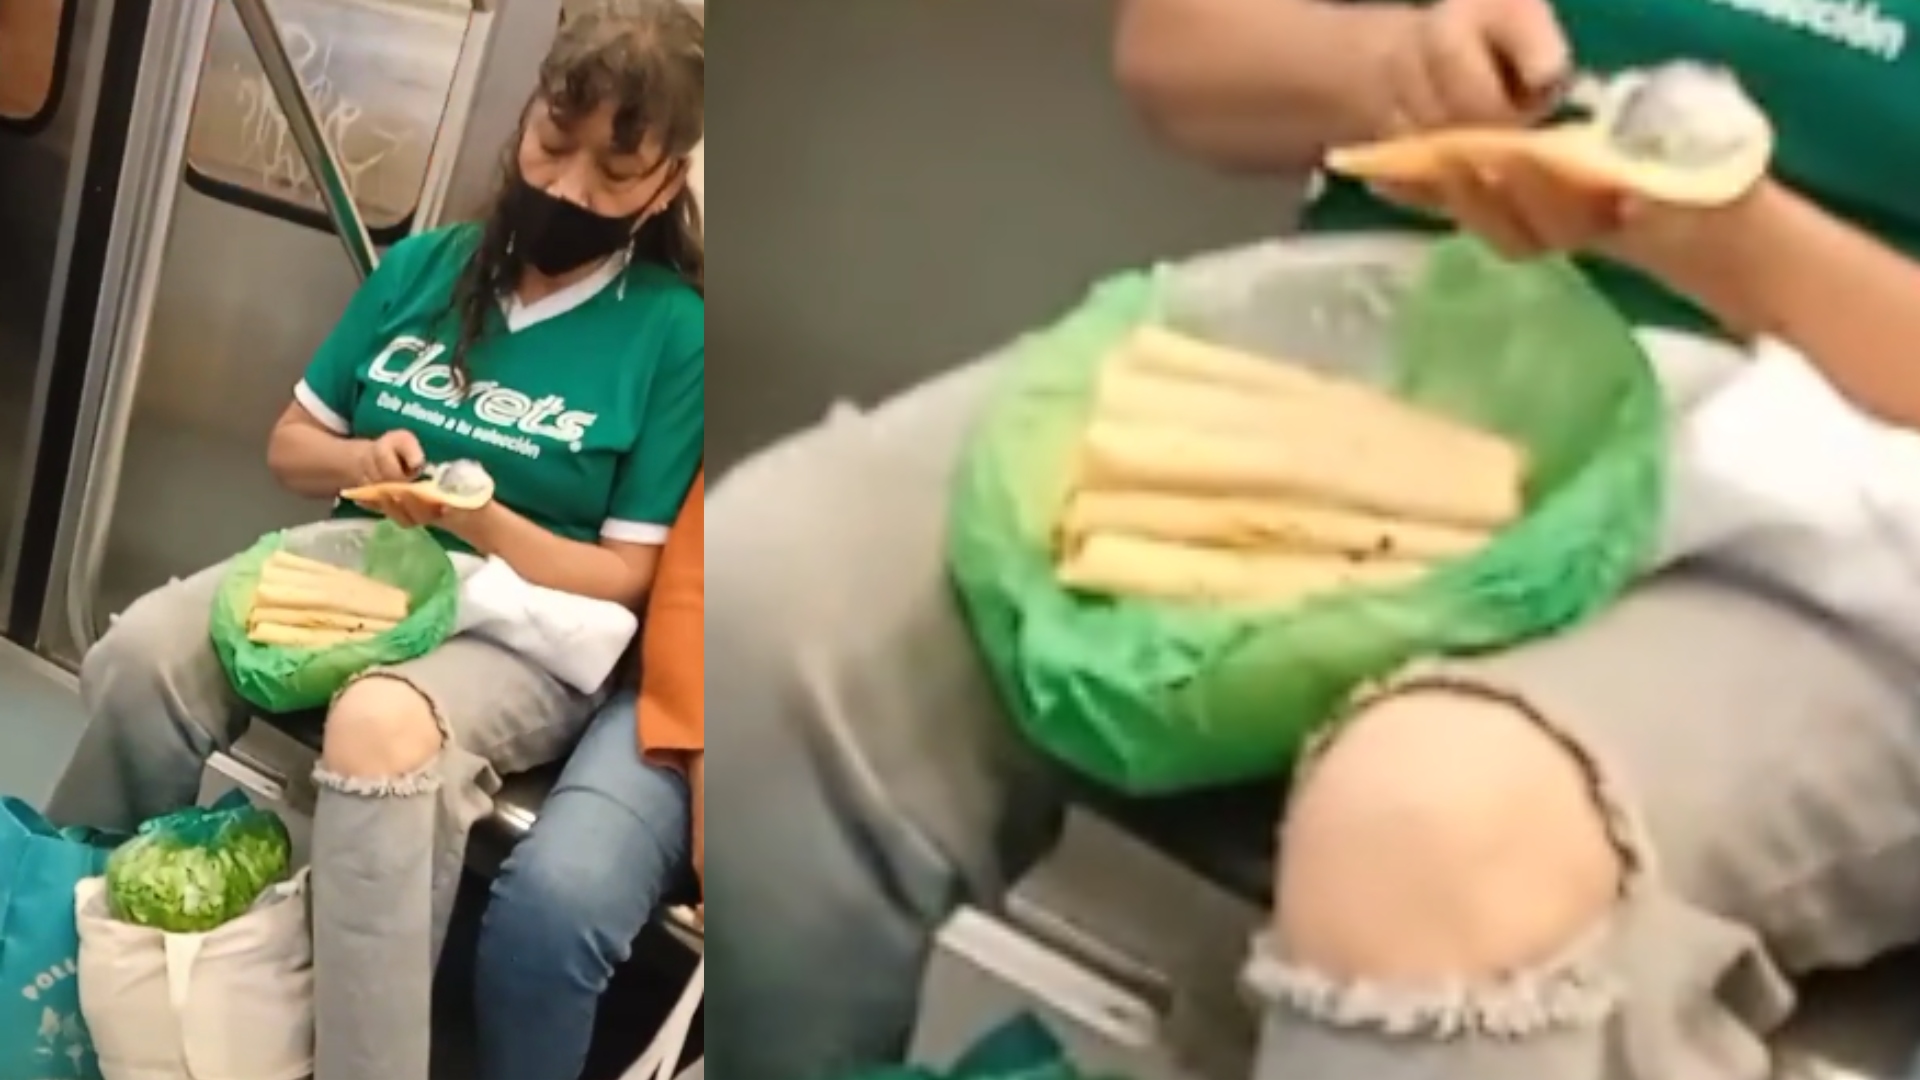 Mujer fue captada en el metro de la CDMX preparando tacos de papa y  usuarios la viralizaron: “Hay que aprovechar el tiempo” - Infobae